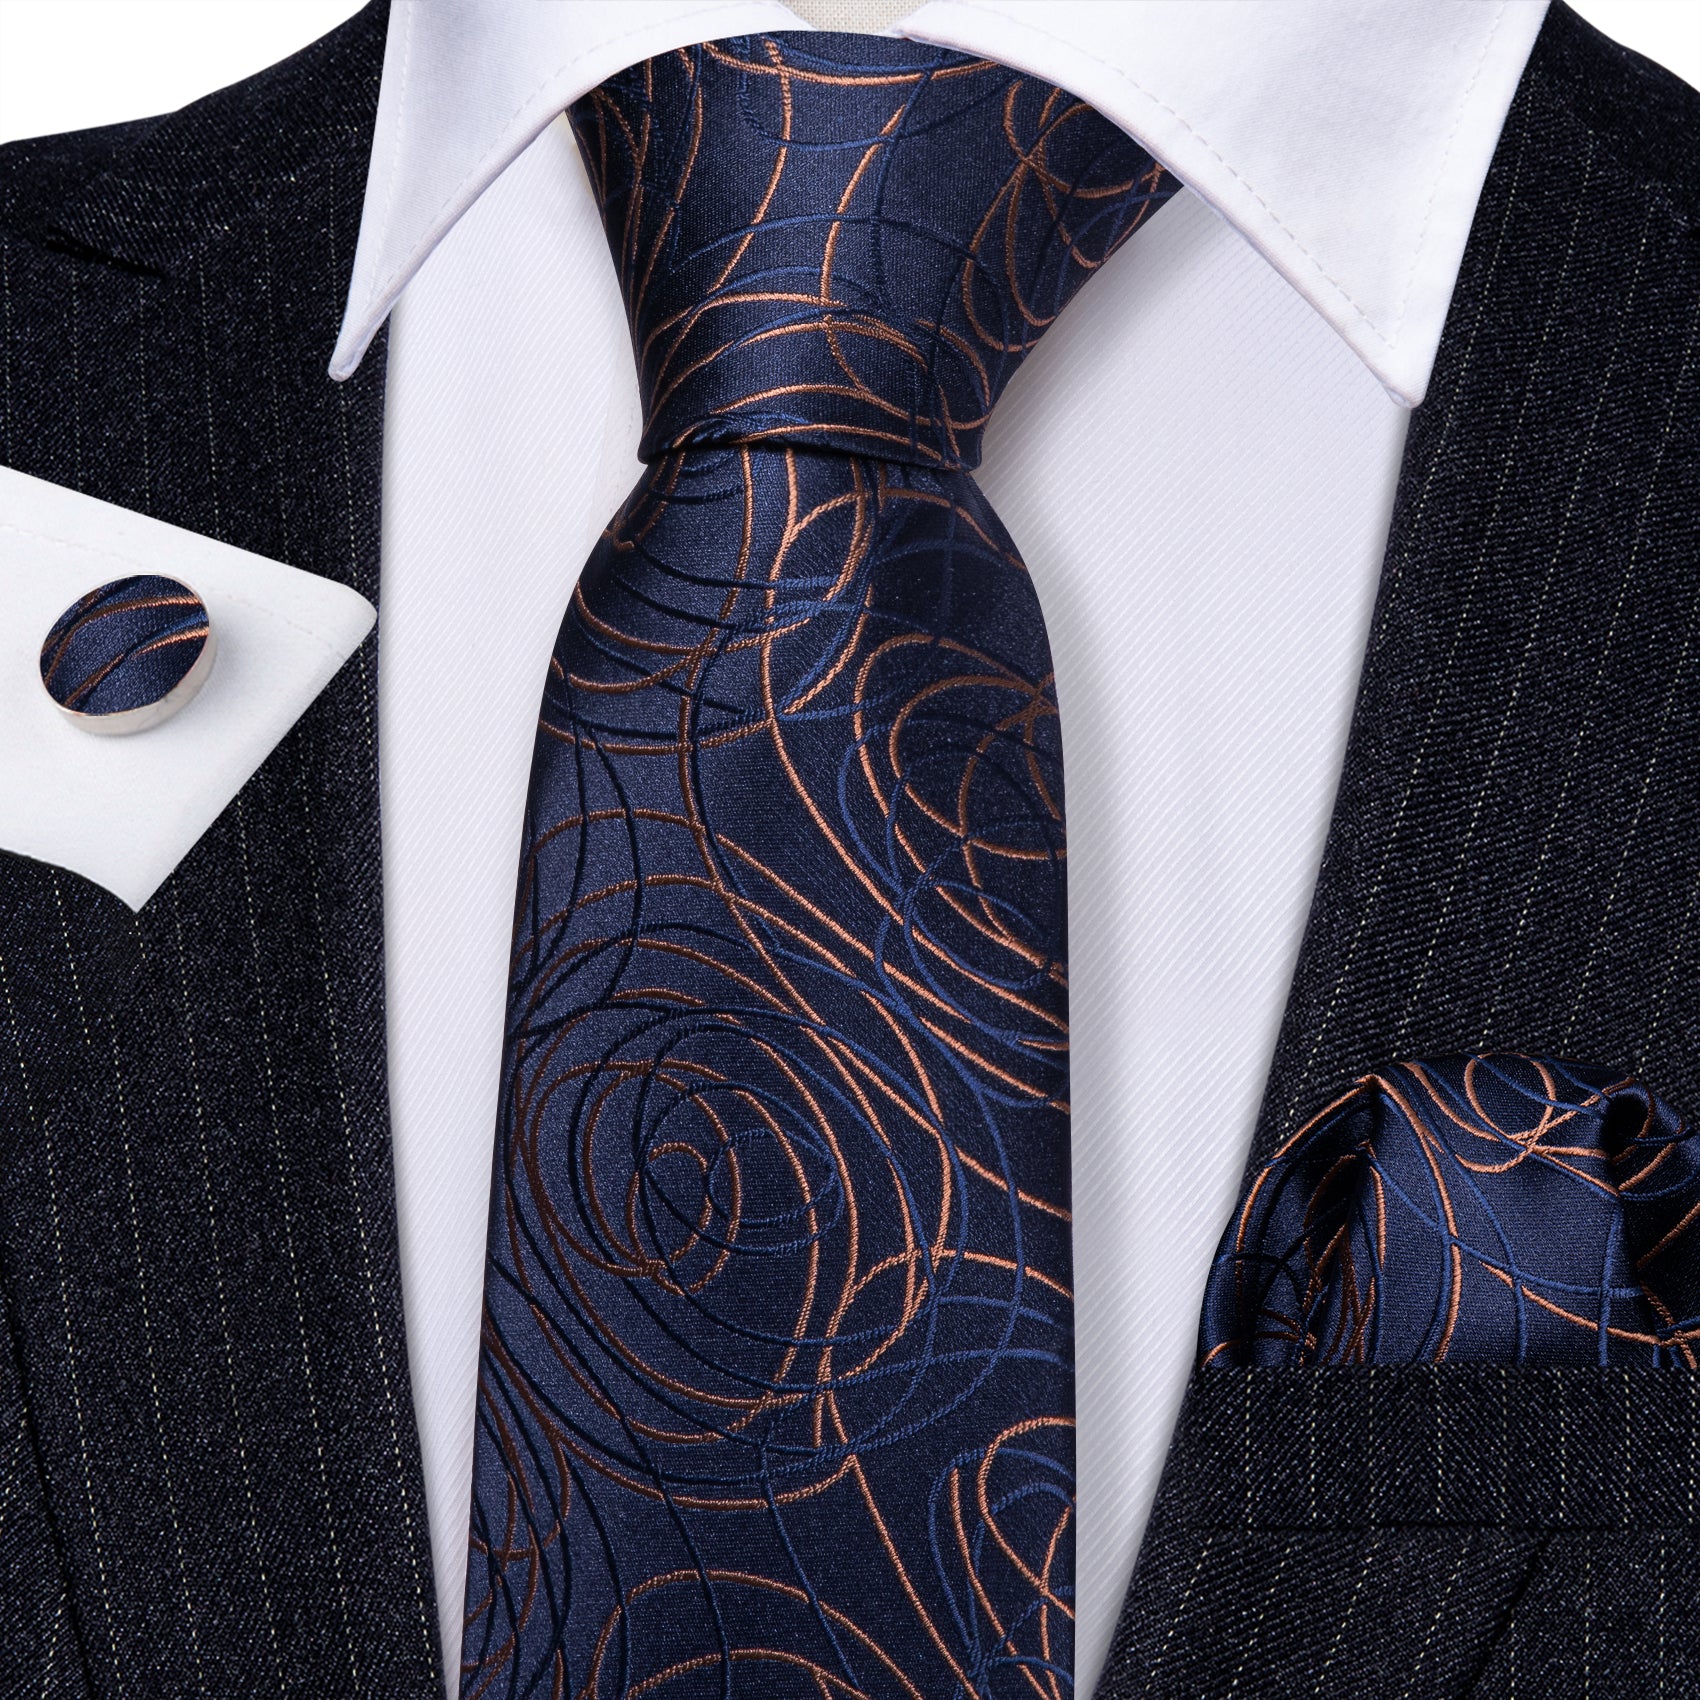 Blue Gold Line image Silk Tie Handkerchief Cufflinks Set